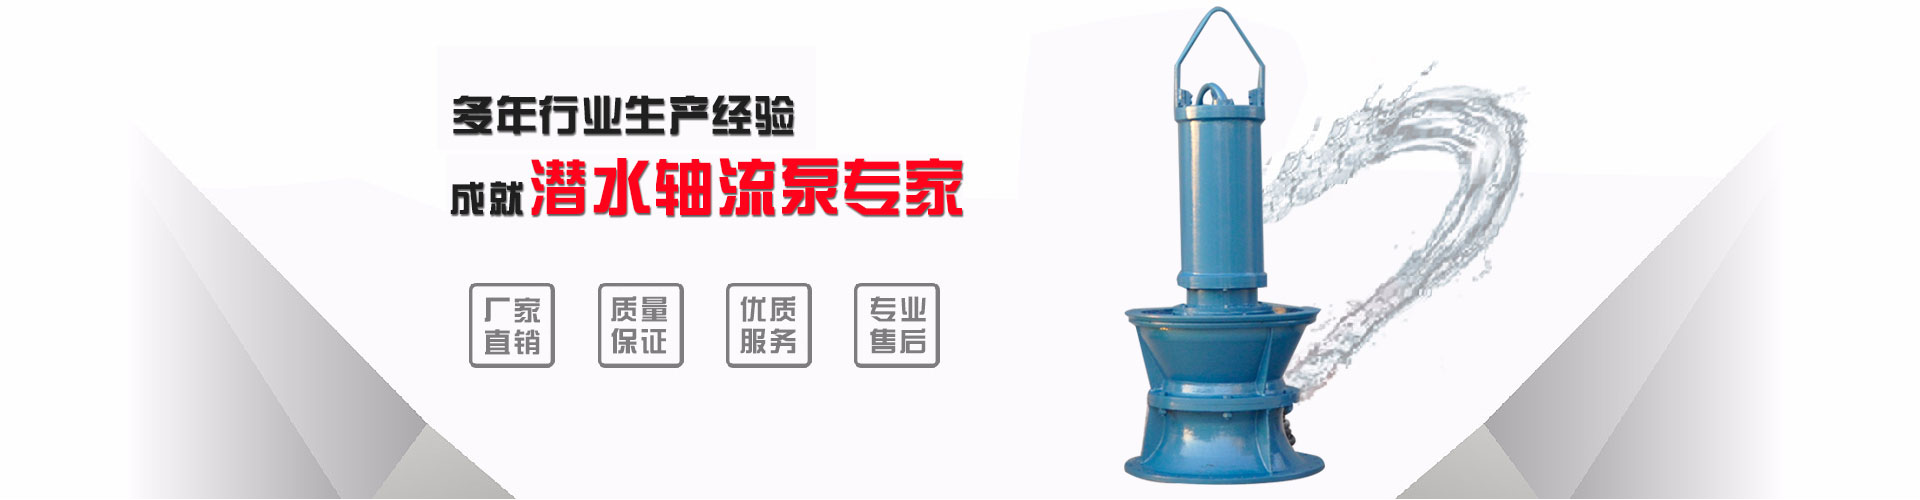 广东低扬程浮筒泵_本溪浮筒泵